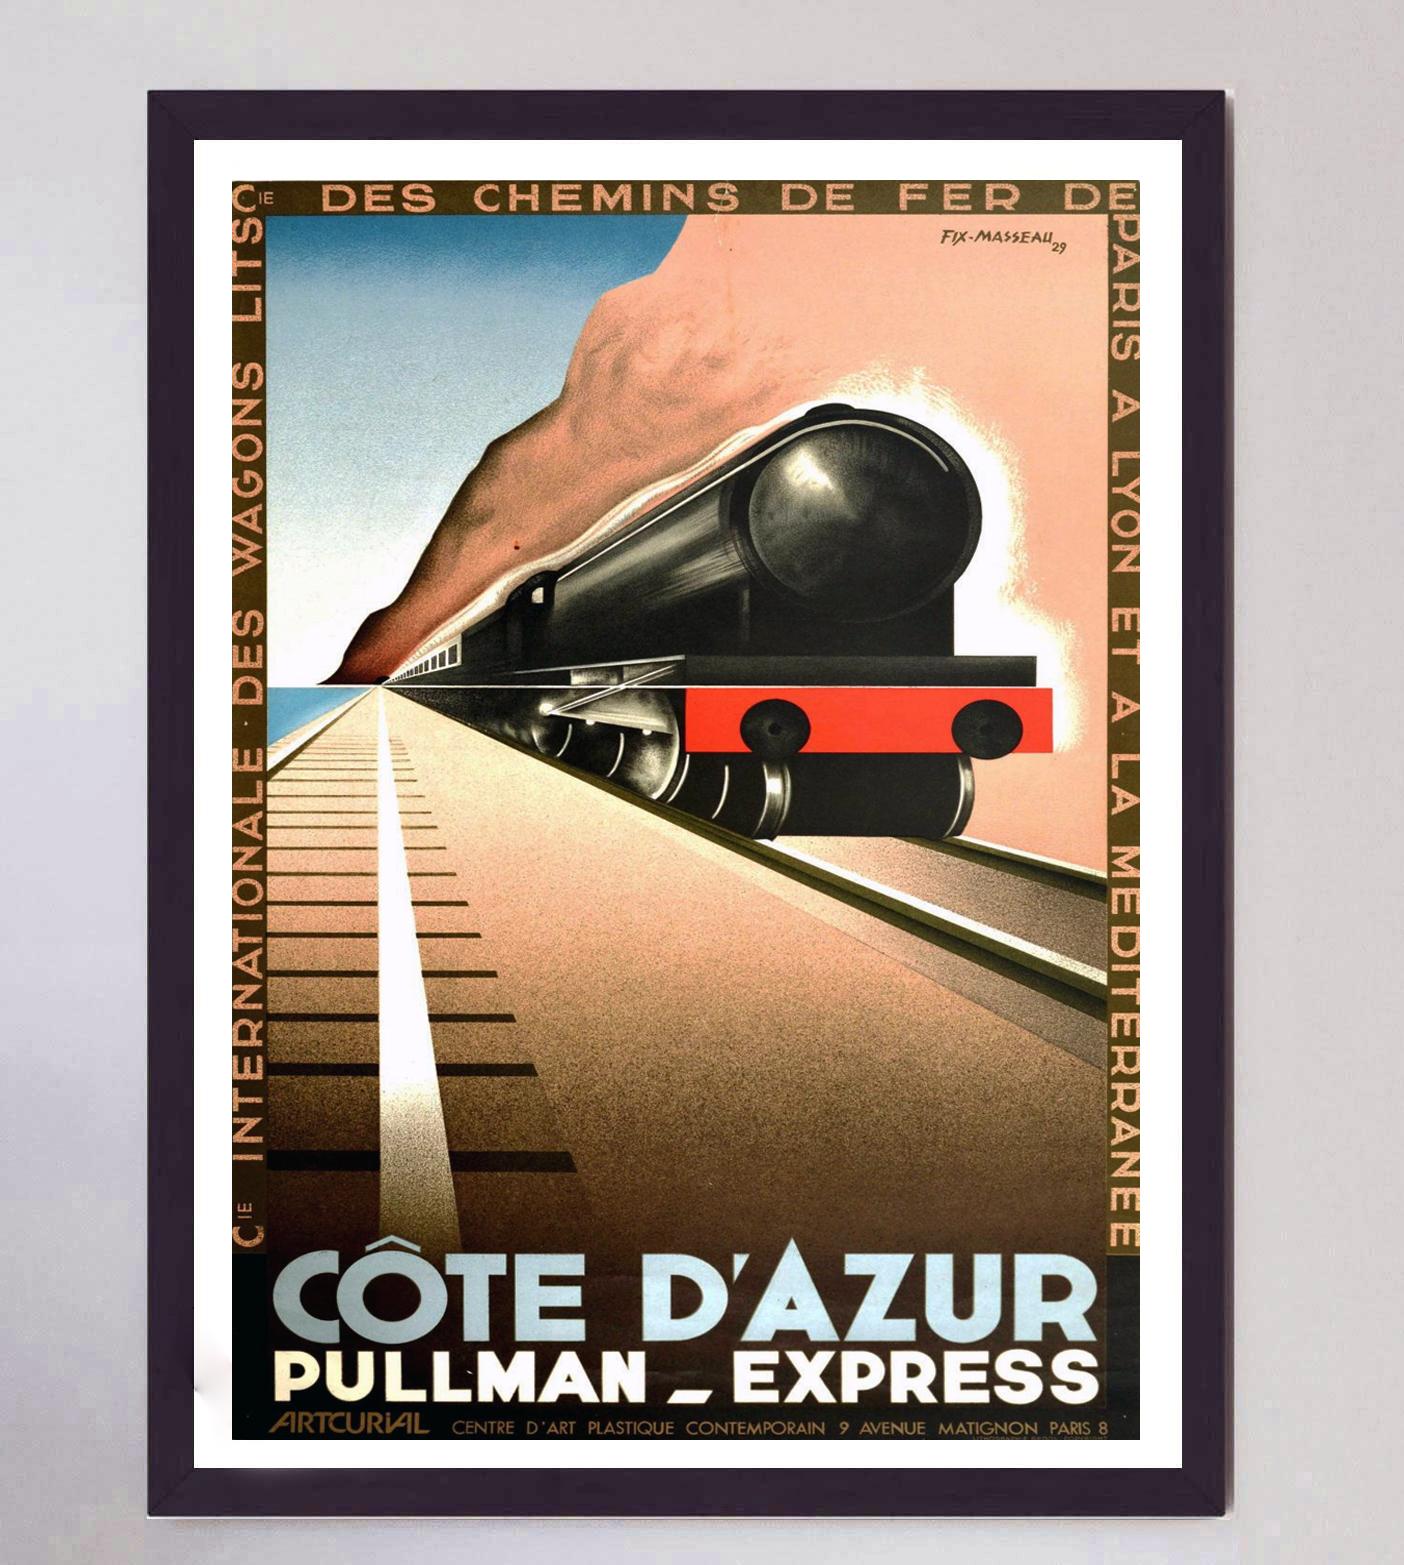 Paper 1982 Cote d'Azur - Pullman Express - Fix-Masseau Original Vintage Poster For Sale